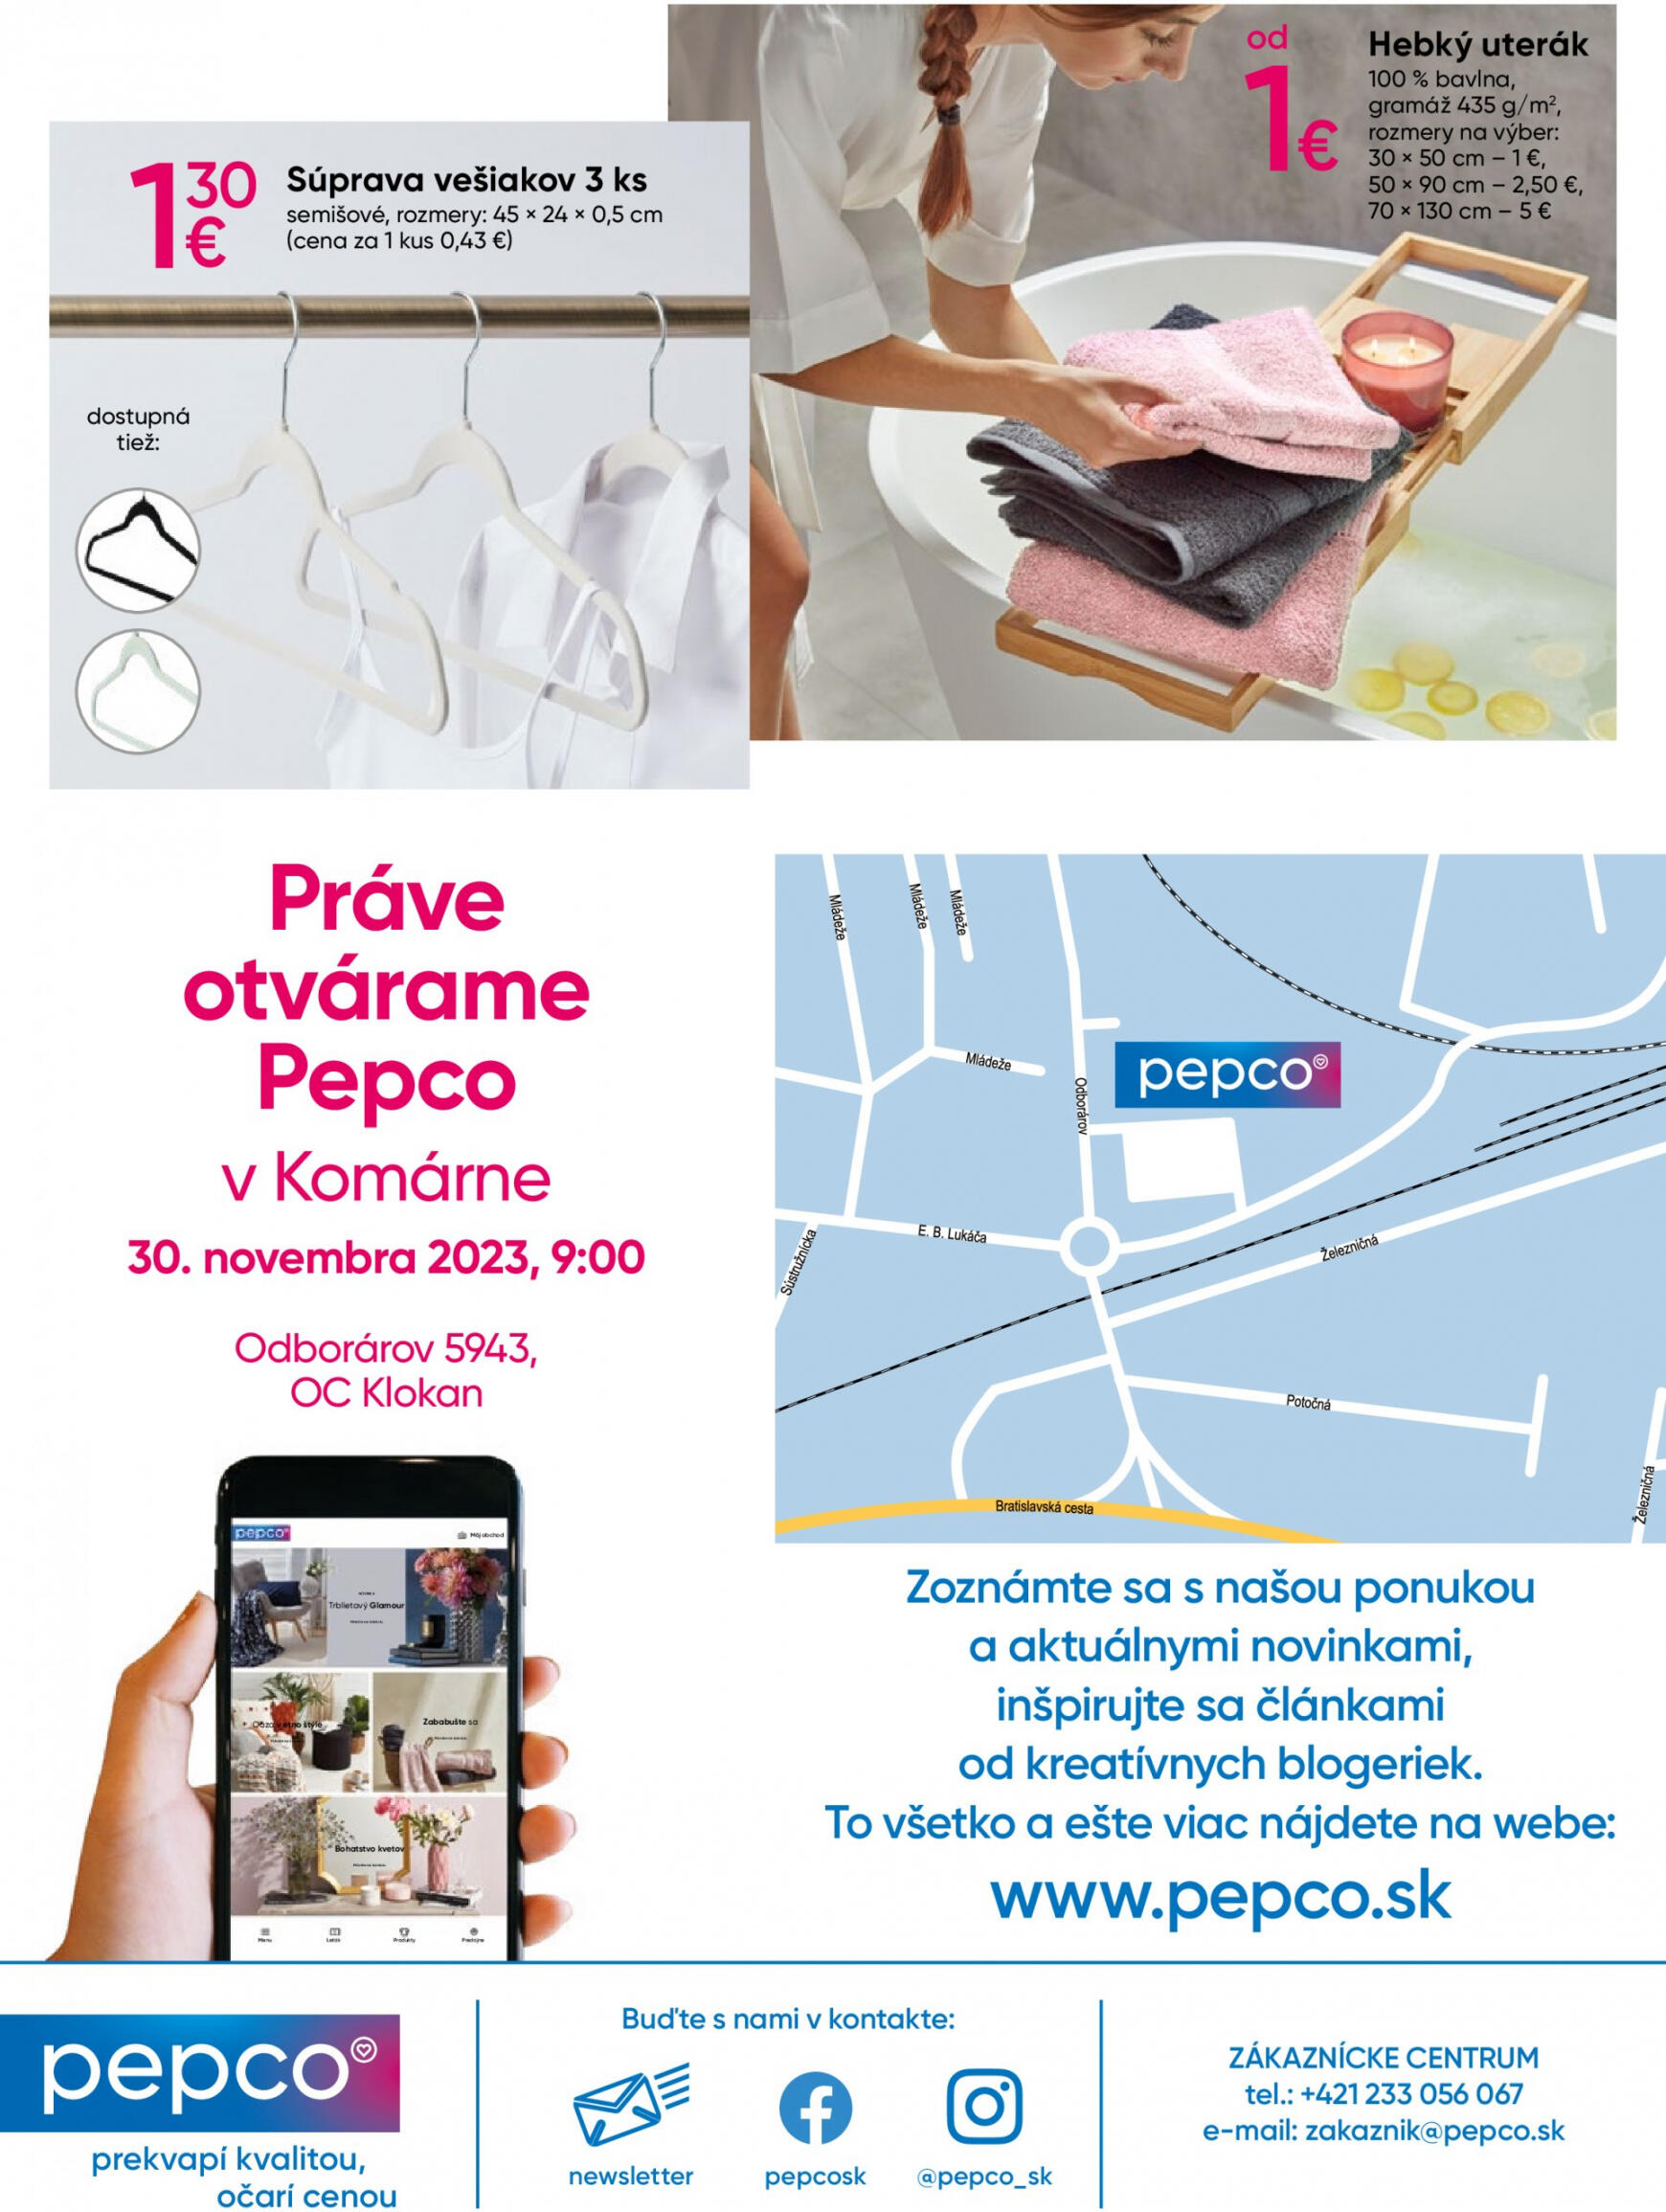 pepco - Pepco - Práve otvárame! – Komárno platný od 30.11.2023 - page: 8